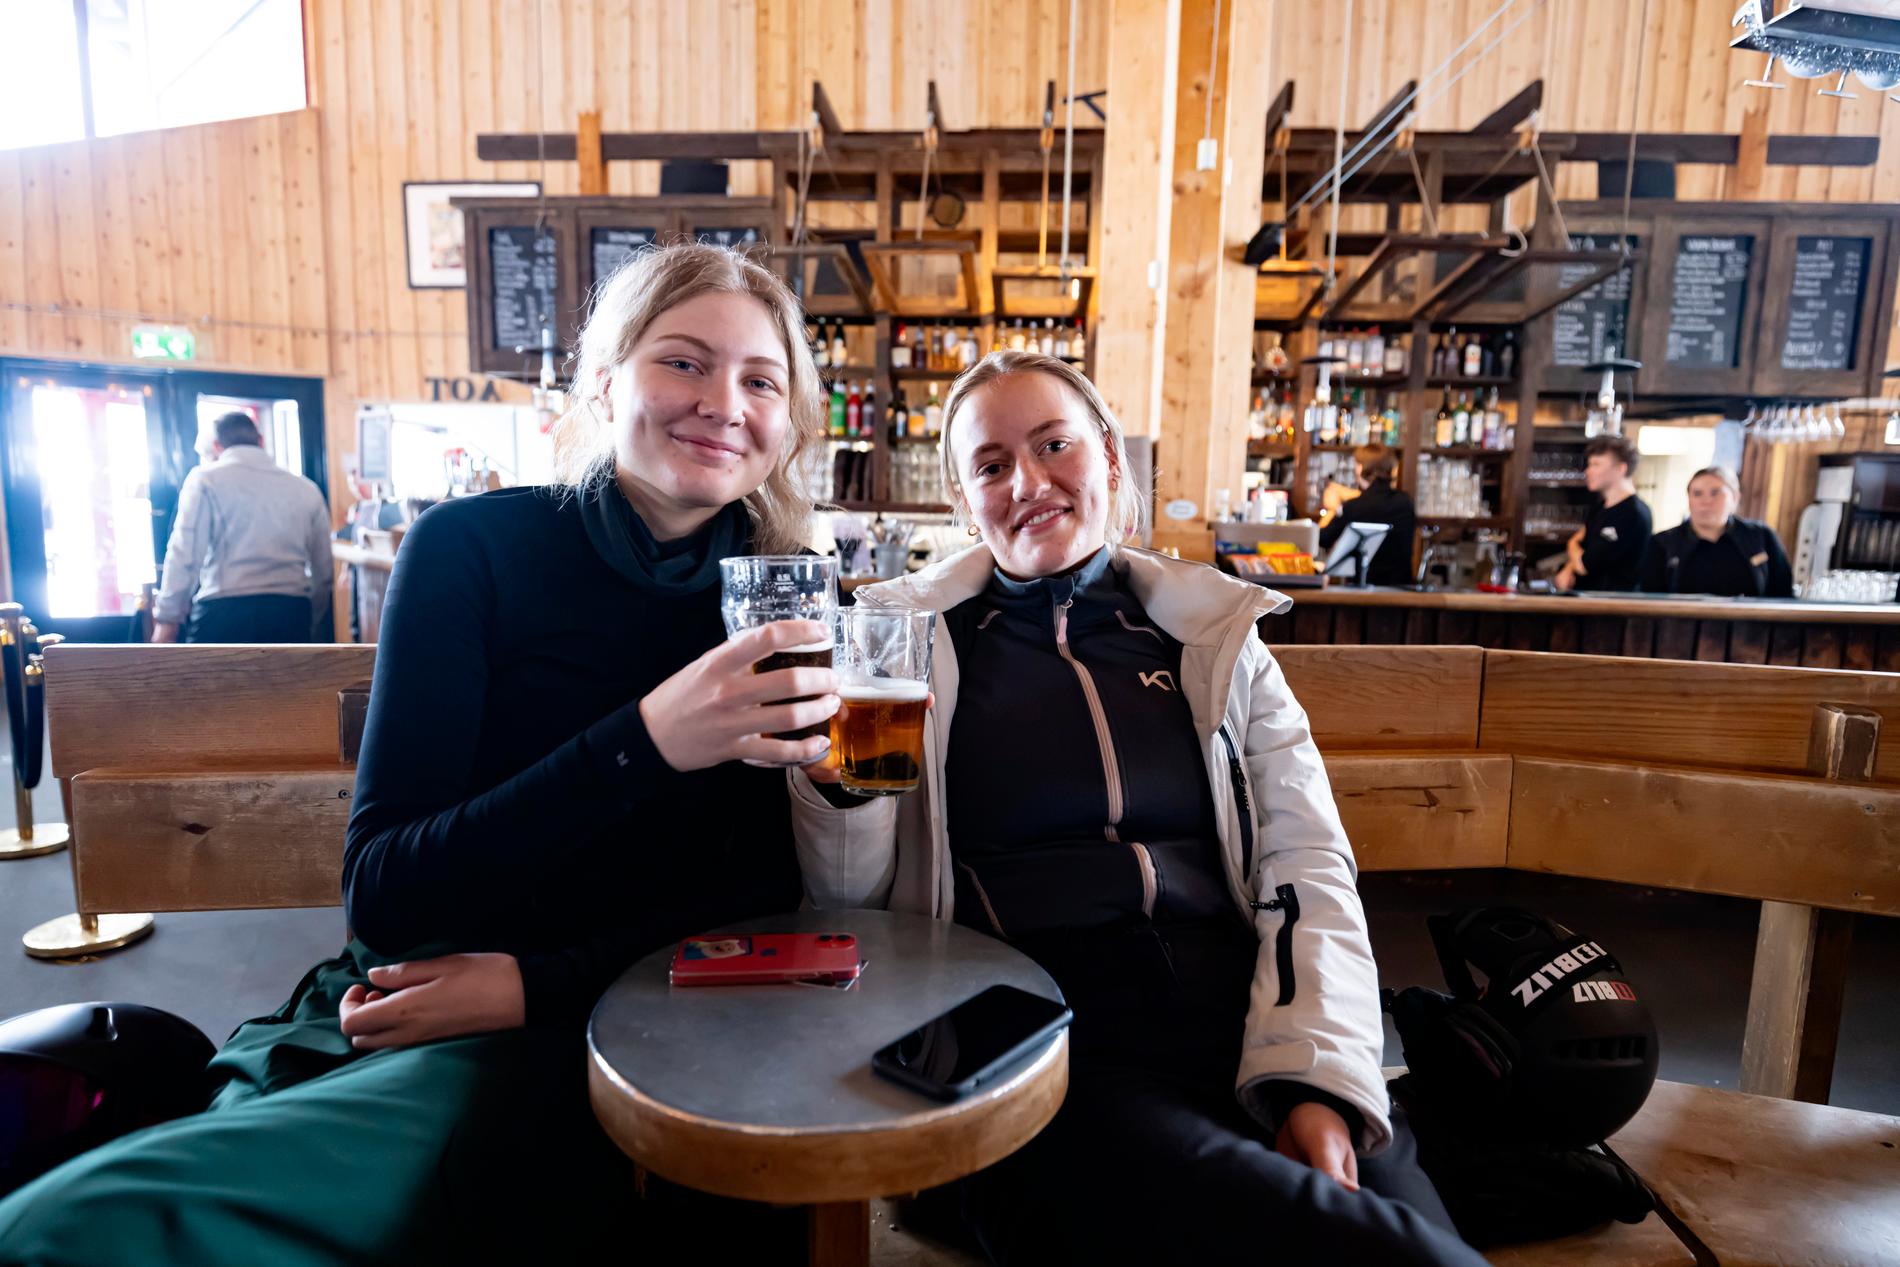 Rumskompisarna Alma Honsberg och Ester Hägg kopplar av med en öl på sin lediga dag.